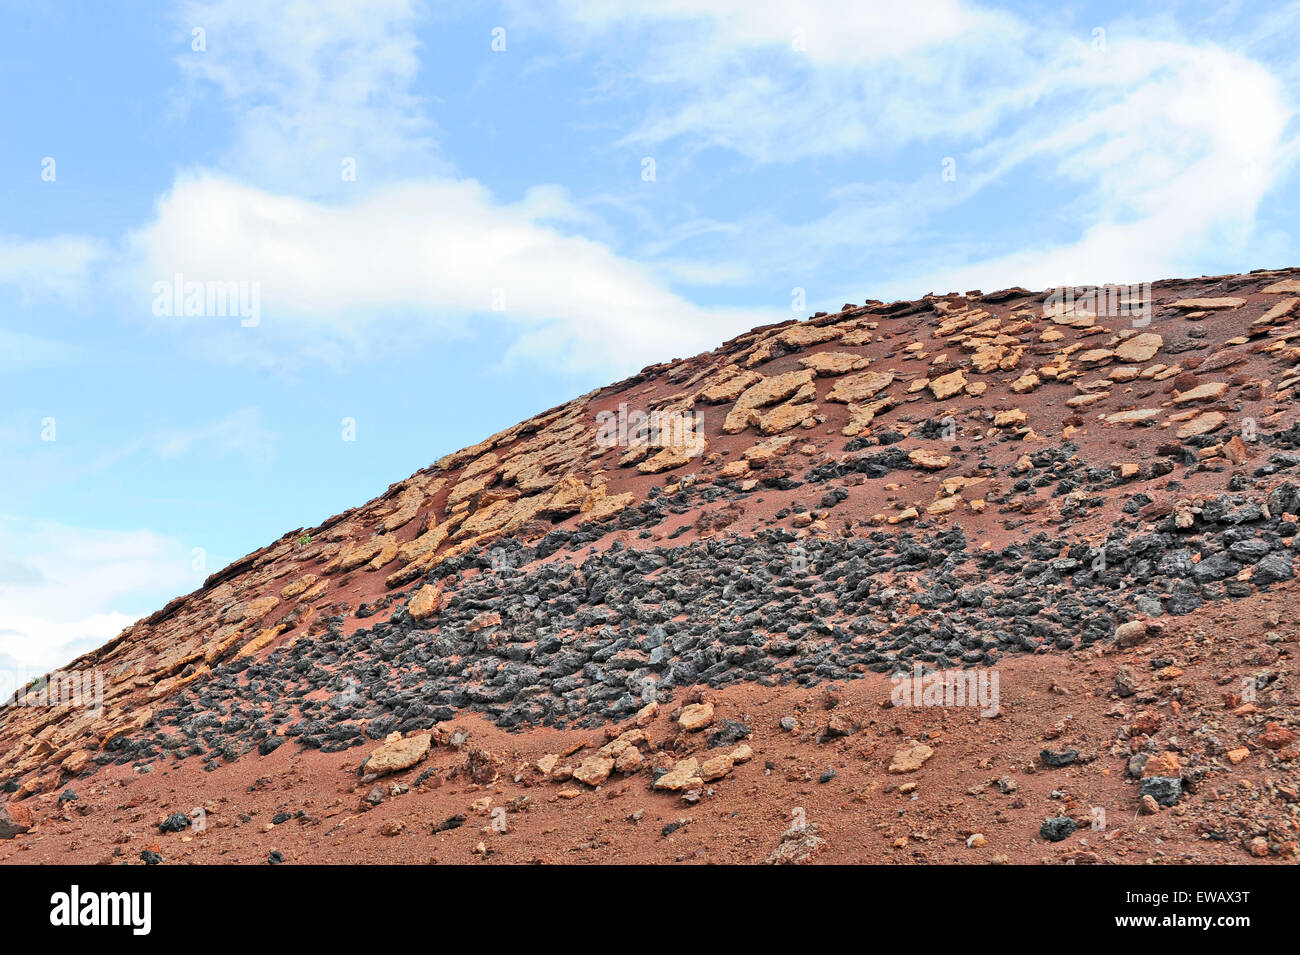 Lanzarote, Islas Canarias, España. Diferentes tipos de rocas volcánicas en la ladera de una colina roja, en el Parque Nacional de Timanfaya. Foto de stock